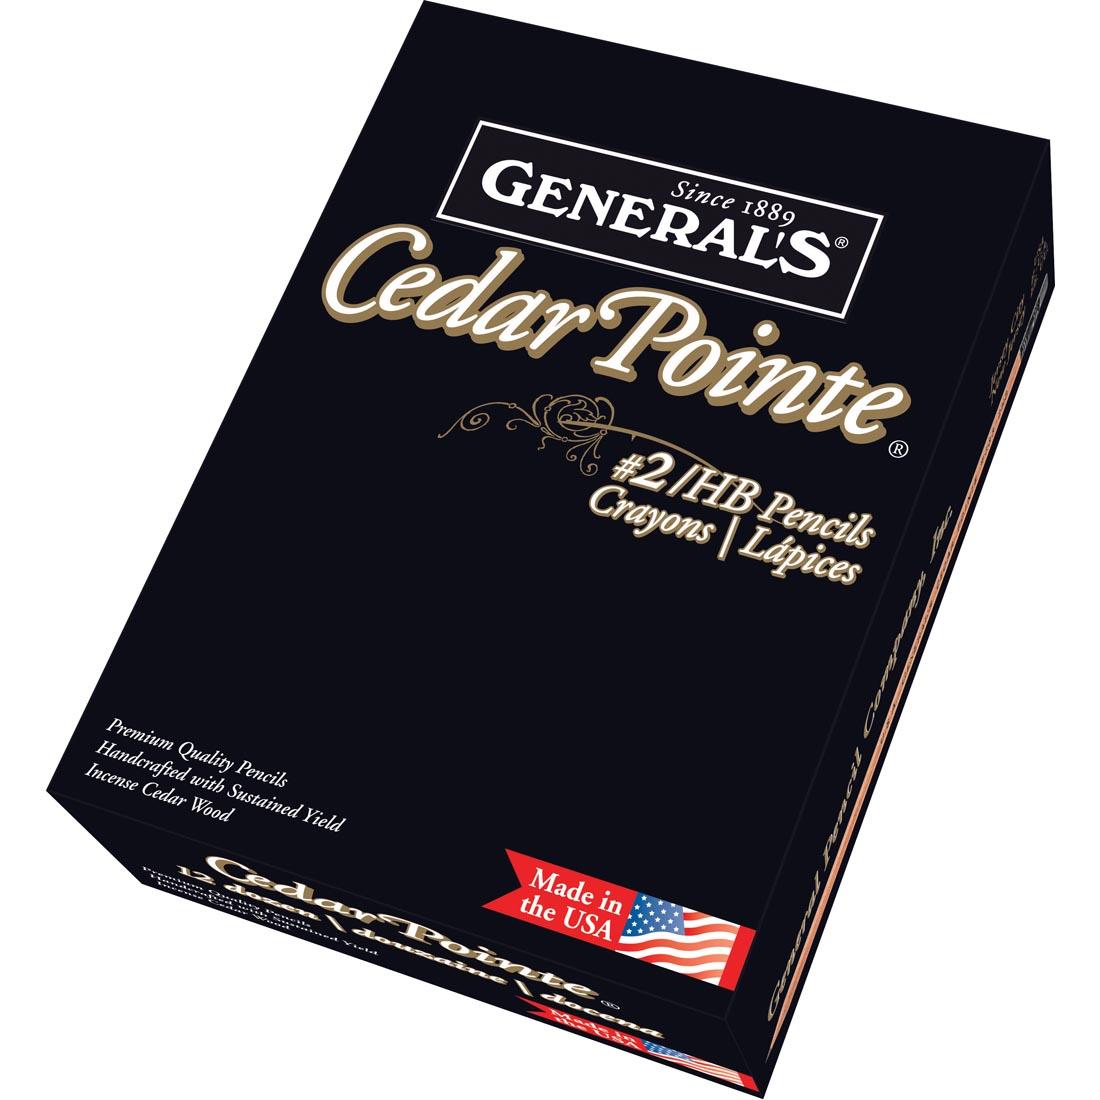 Box of General's Cedar Pointe Pencils